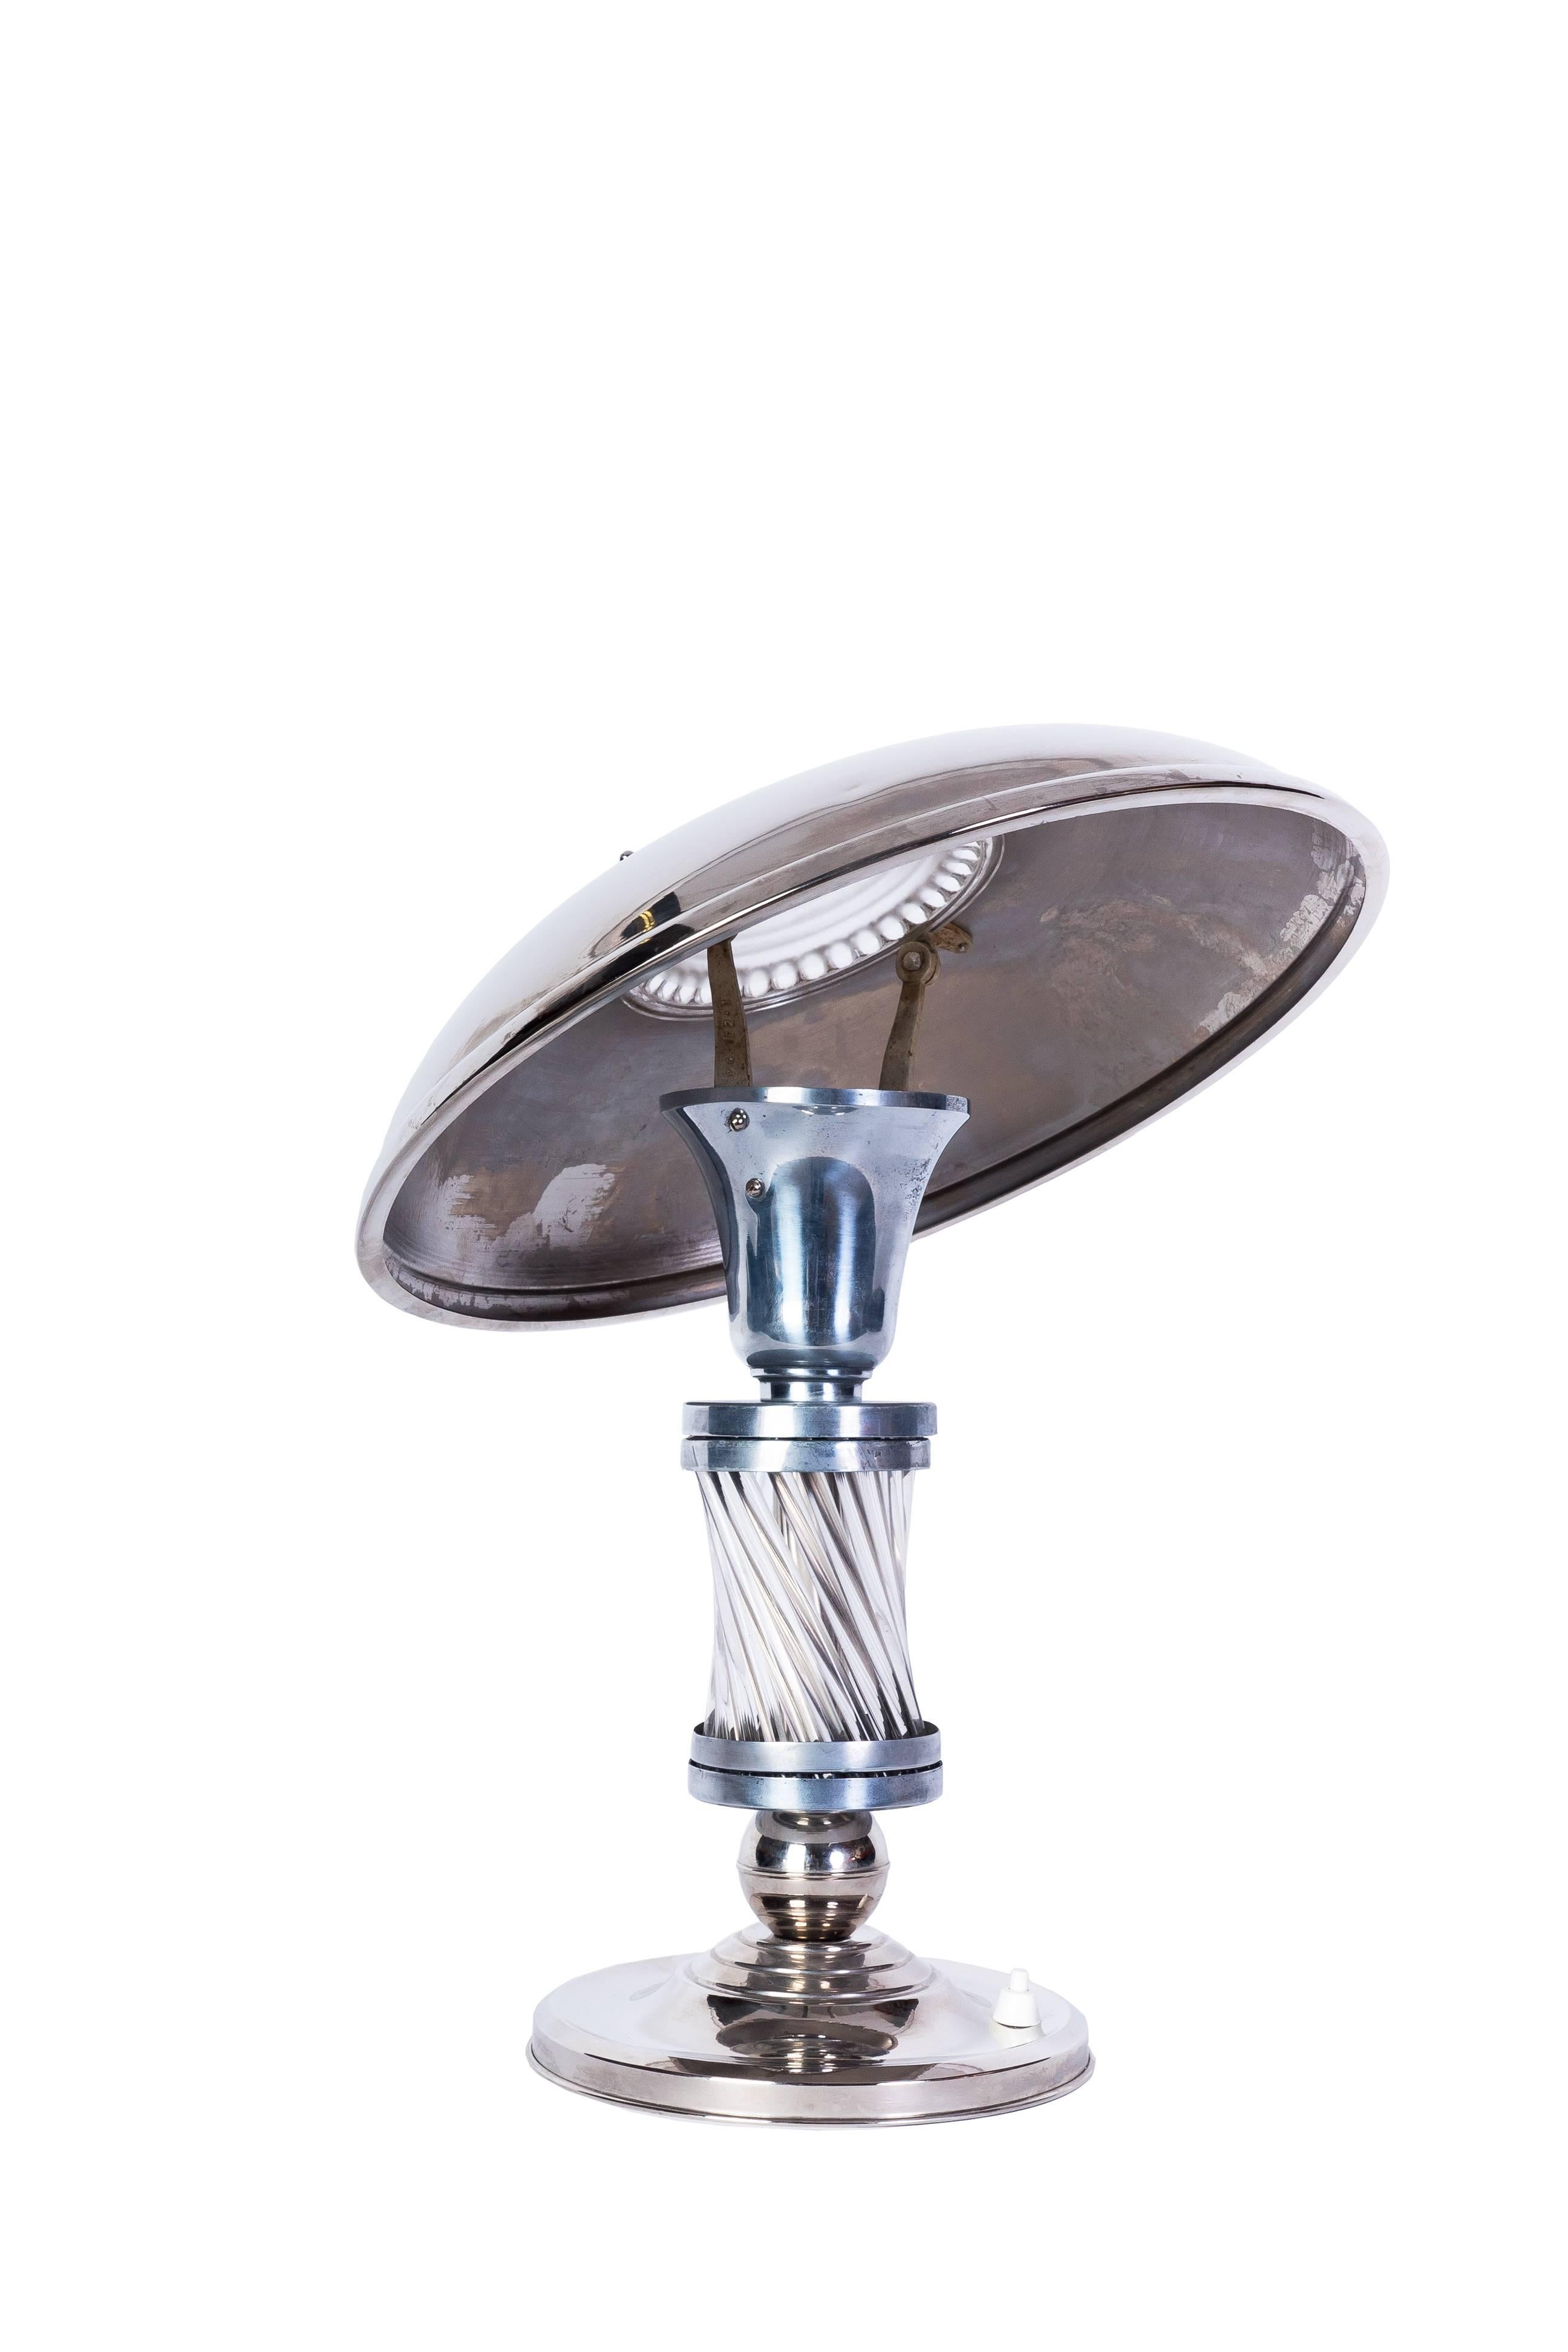 Cette luxueuse lampe de table Art déco (vers 1925) présente un corps chromé avec une base et un abat-jour argentés pour un contraste magnifique. Tiges de verre sur le corps et plaque de verre moulé pour coiffer l'abat-jour. L'abat-jour pivote pour